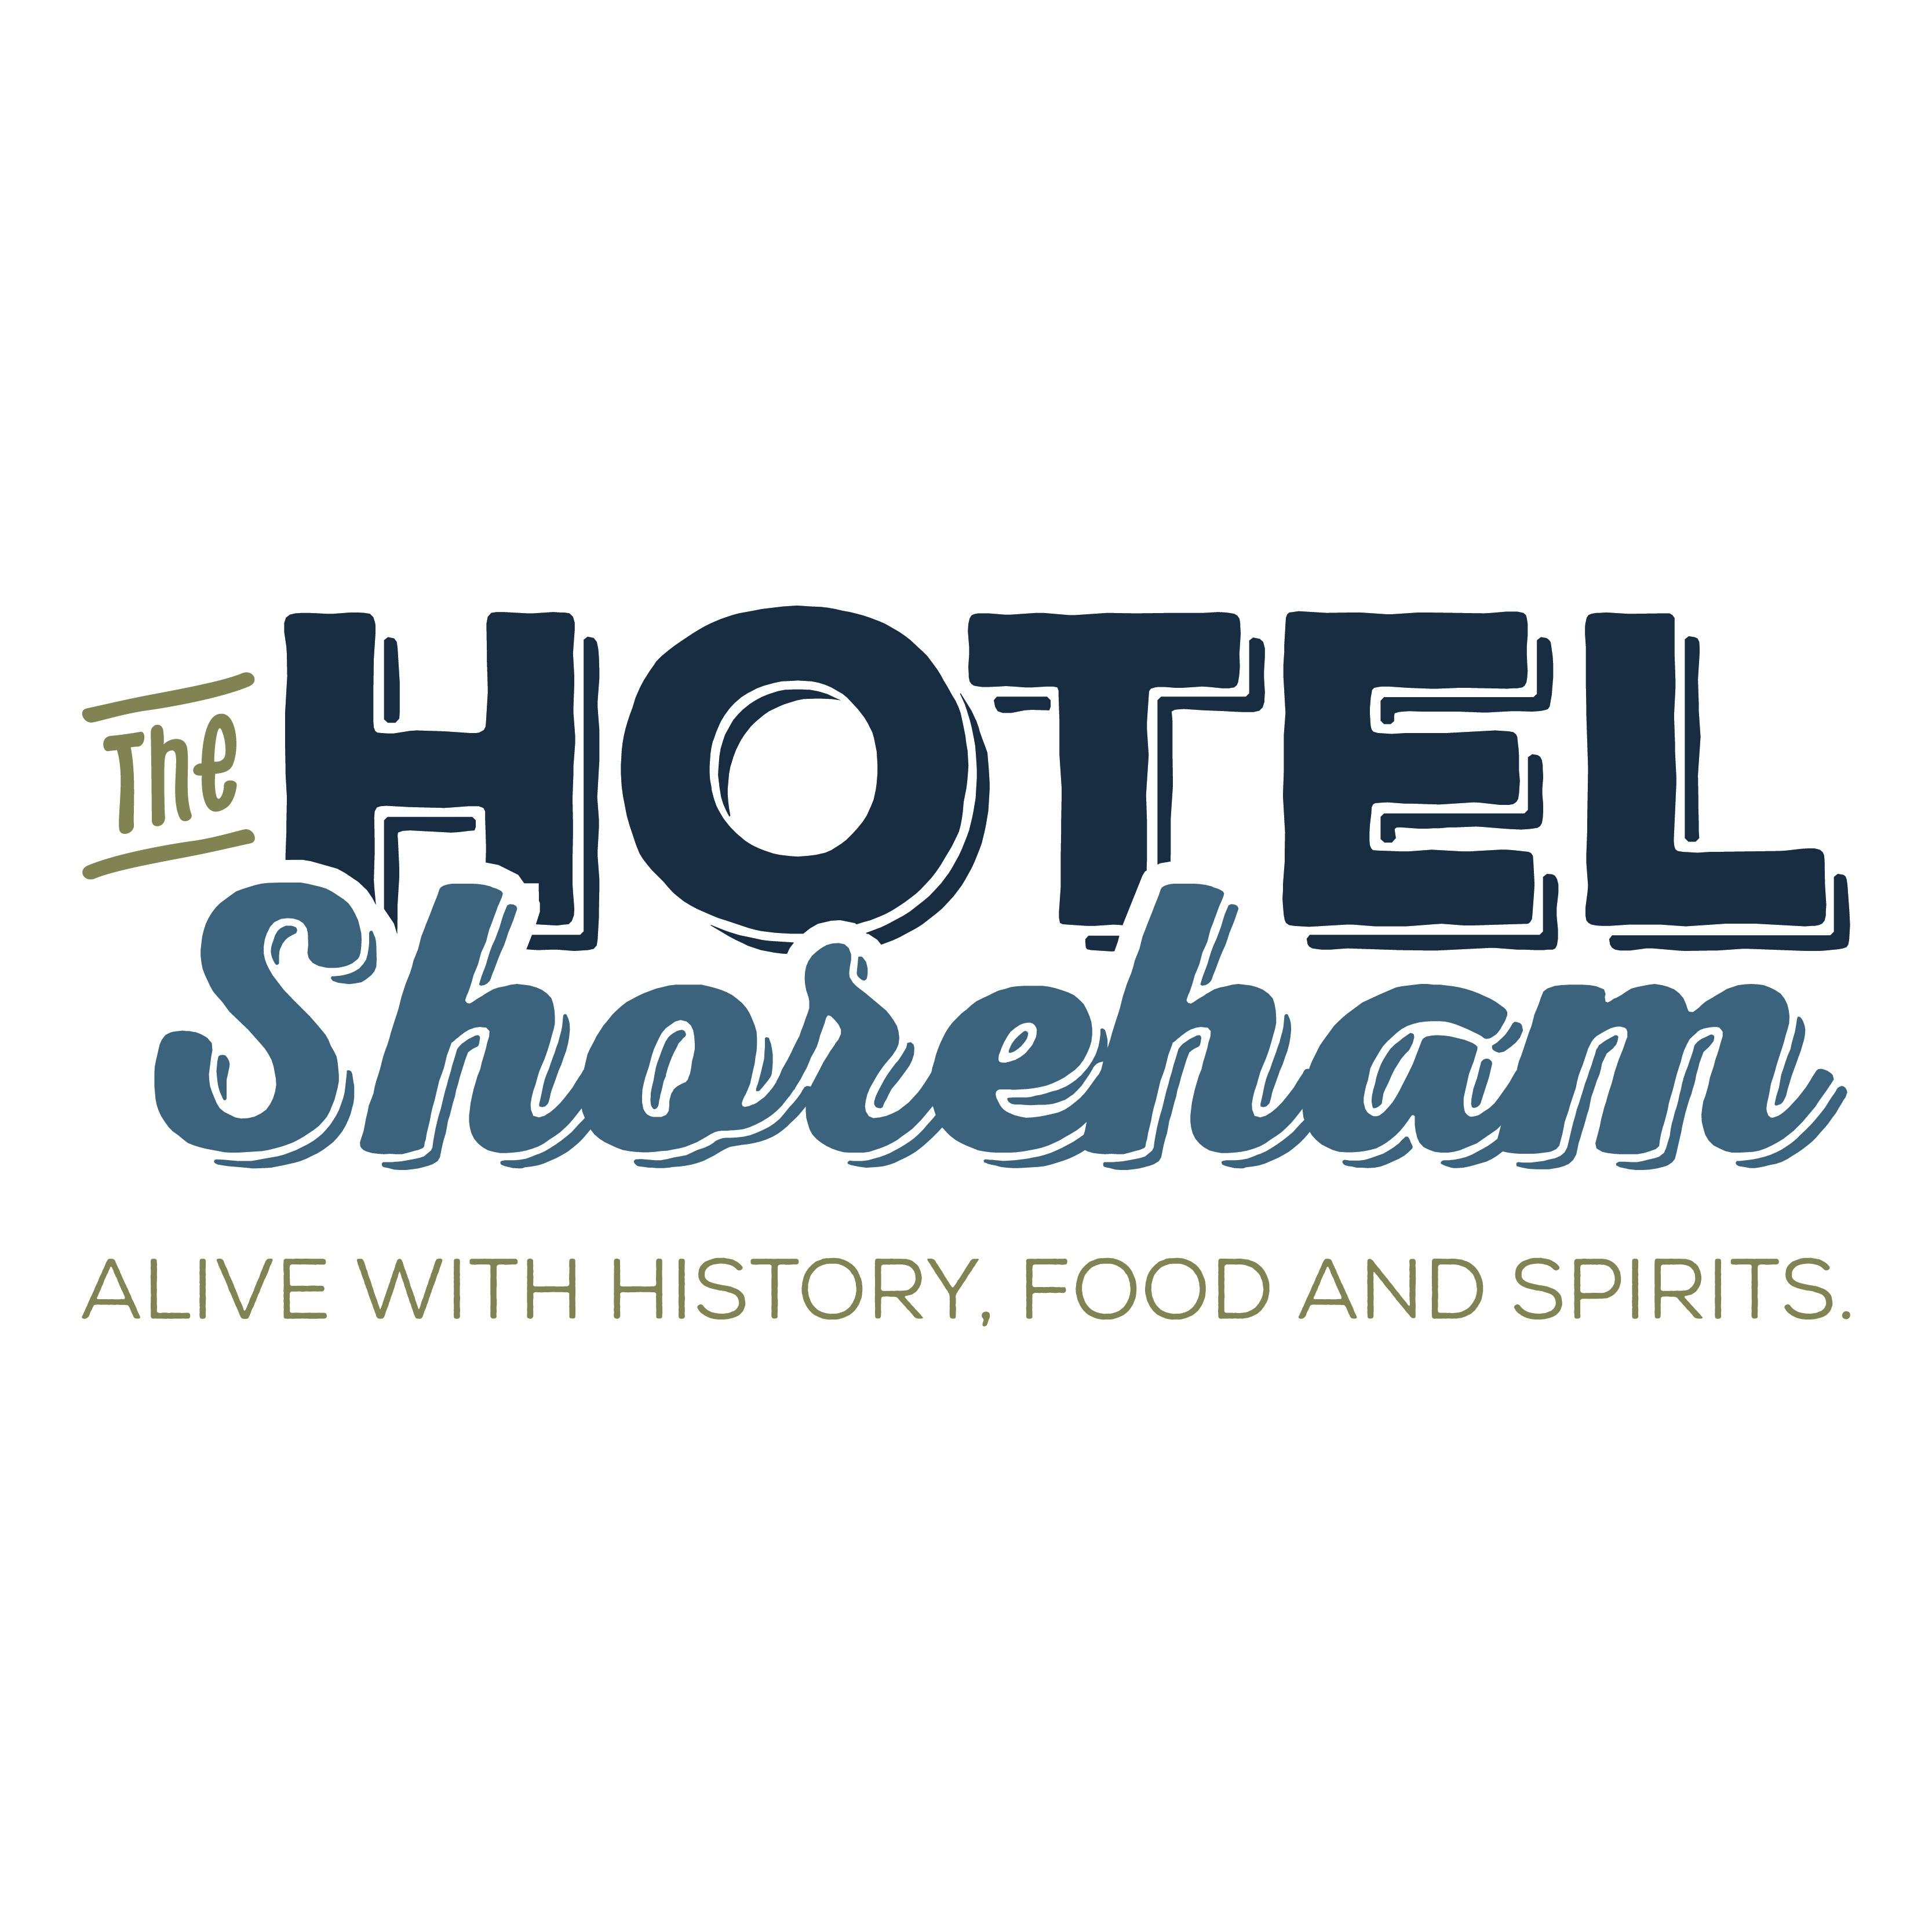 Hotel Shoreham